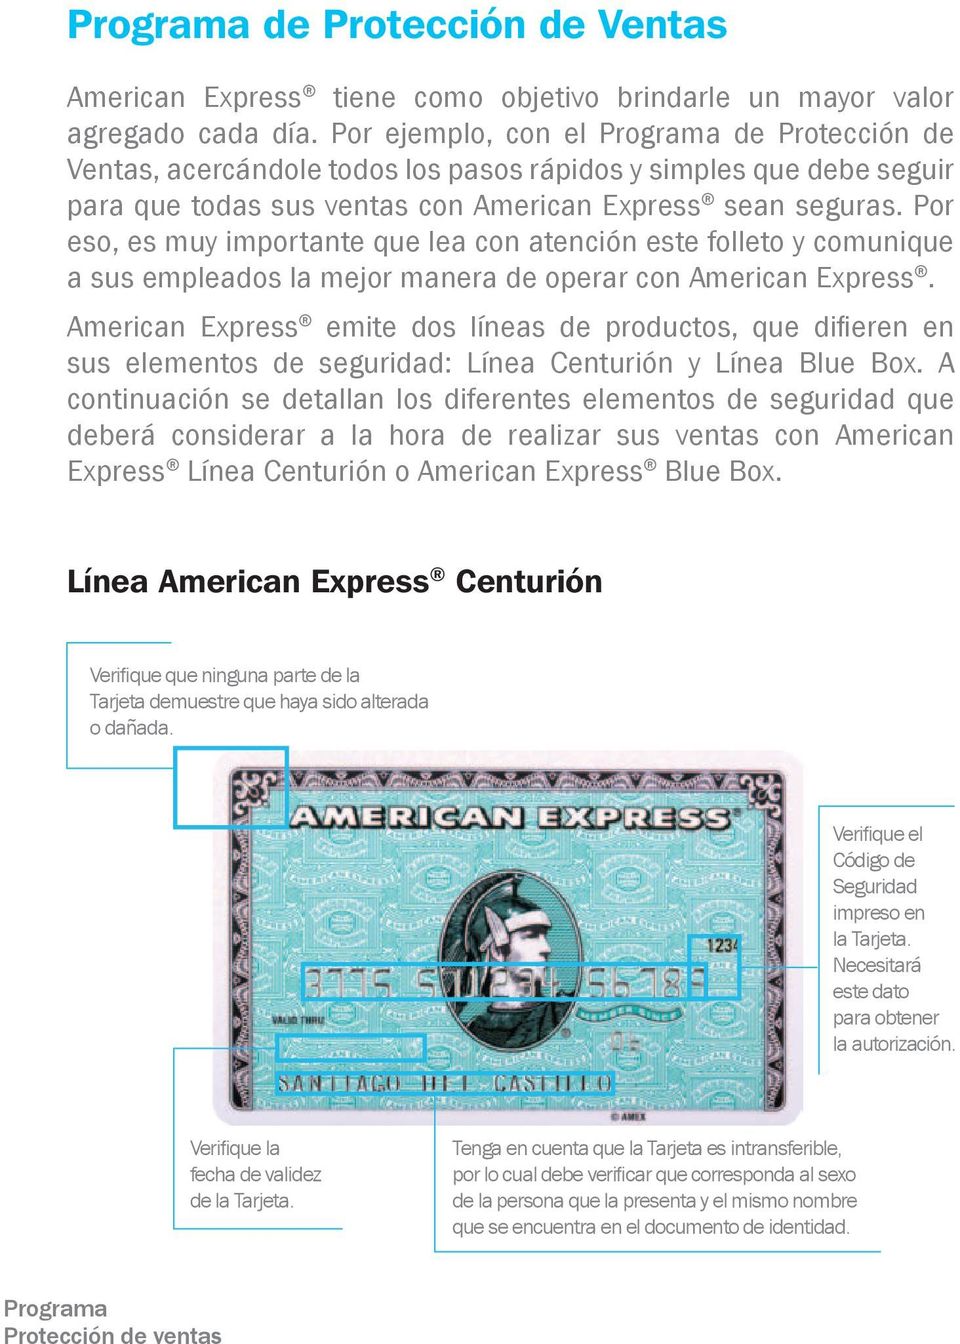 Por eso, es muy importante que lea con atención este folleto y comunique a sus empleados la mejor manera de operar con American Express.